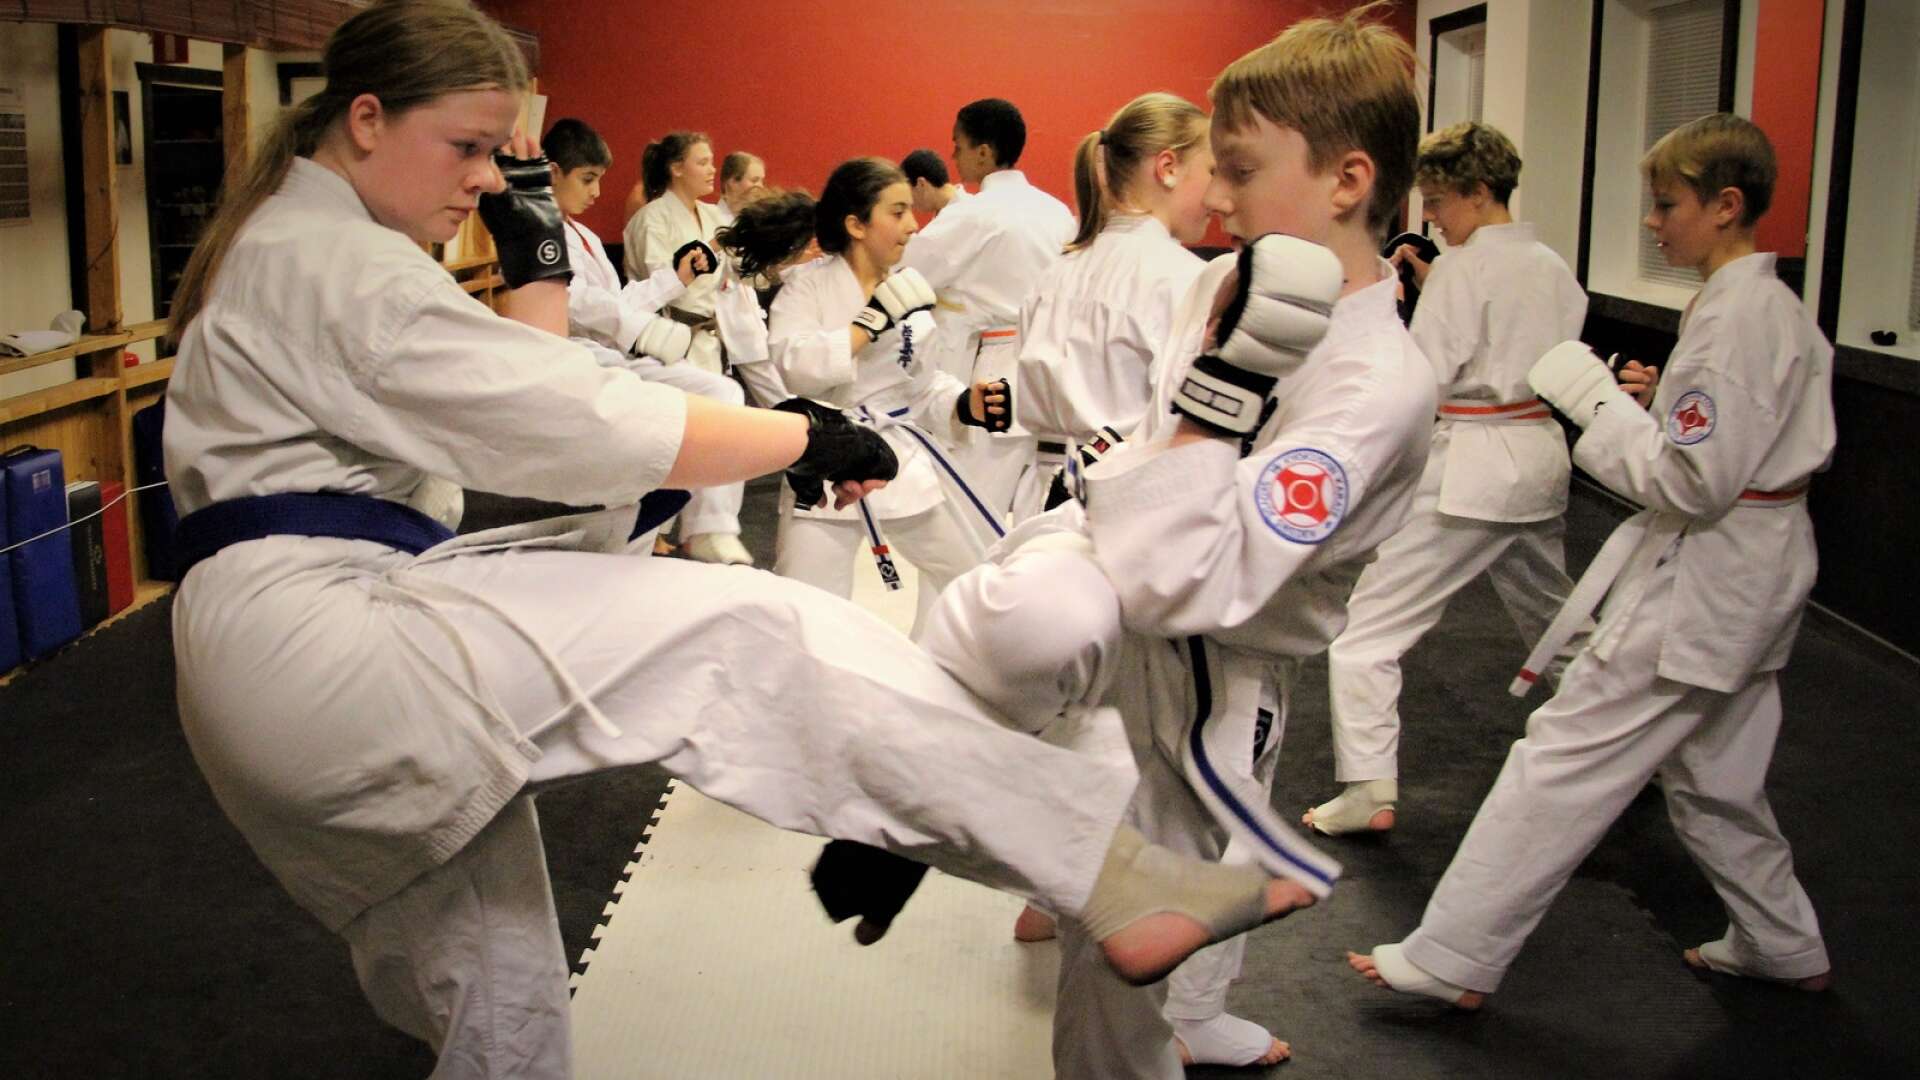 För den som vill träna karate ges möjligheten vid tre tillfällen under sportlovsveckan. Här en bild från träning i en annan klubb.